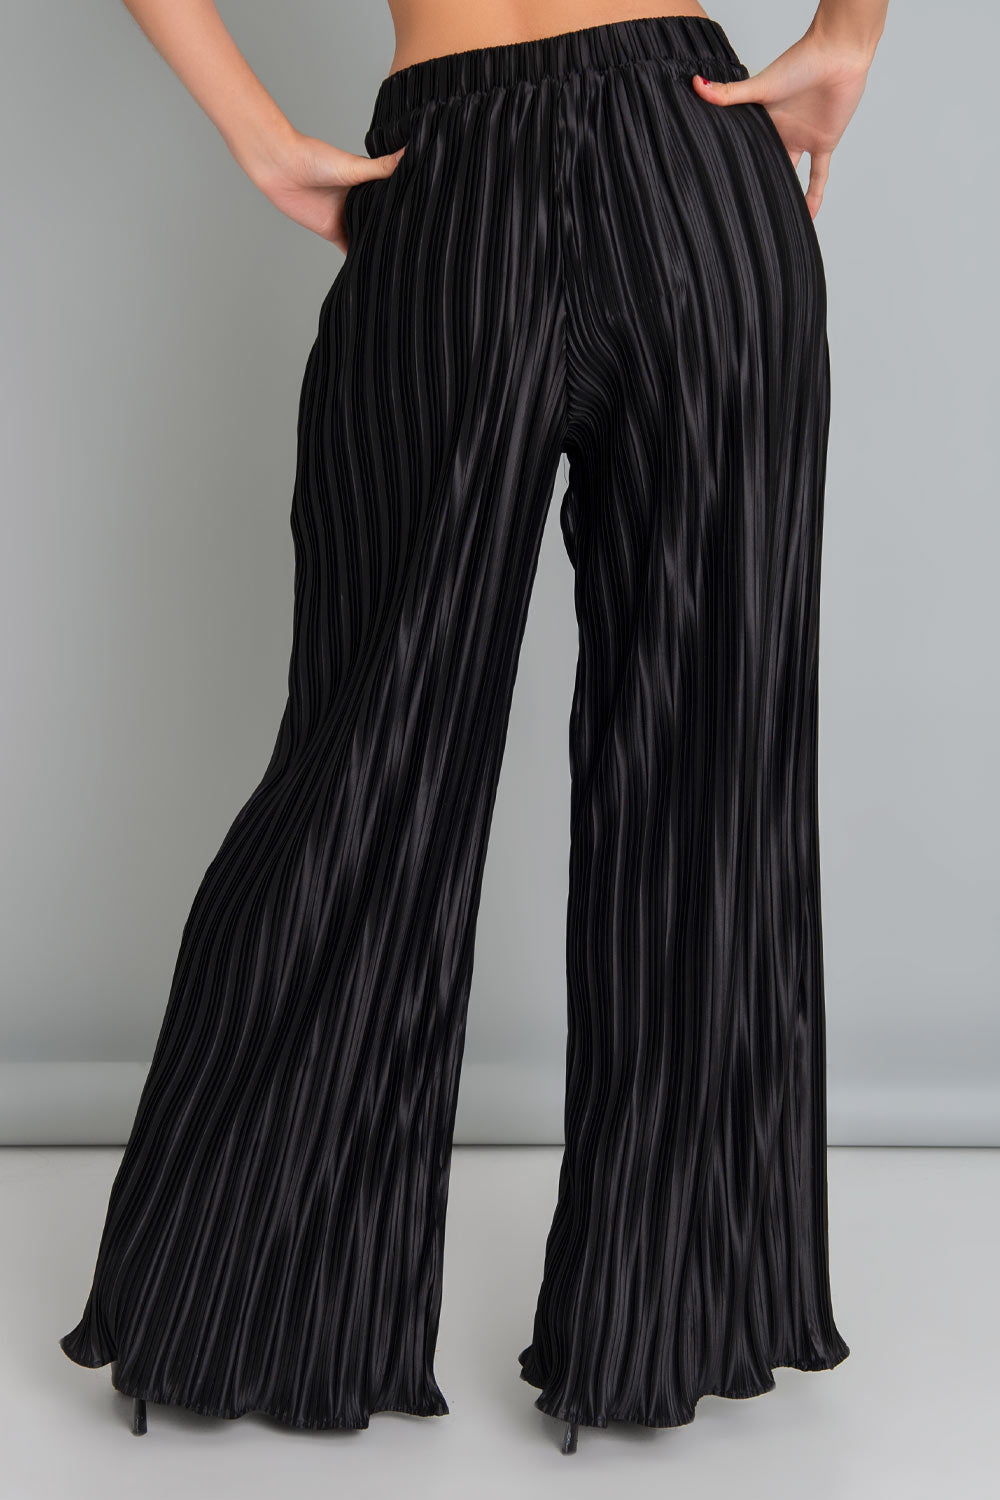 Pantalón satinado de fit palazzo, cintura alta con pretina elástica, plisado en textura de tejido y bajo con rib rizado en borde.